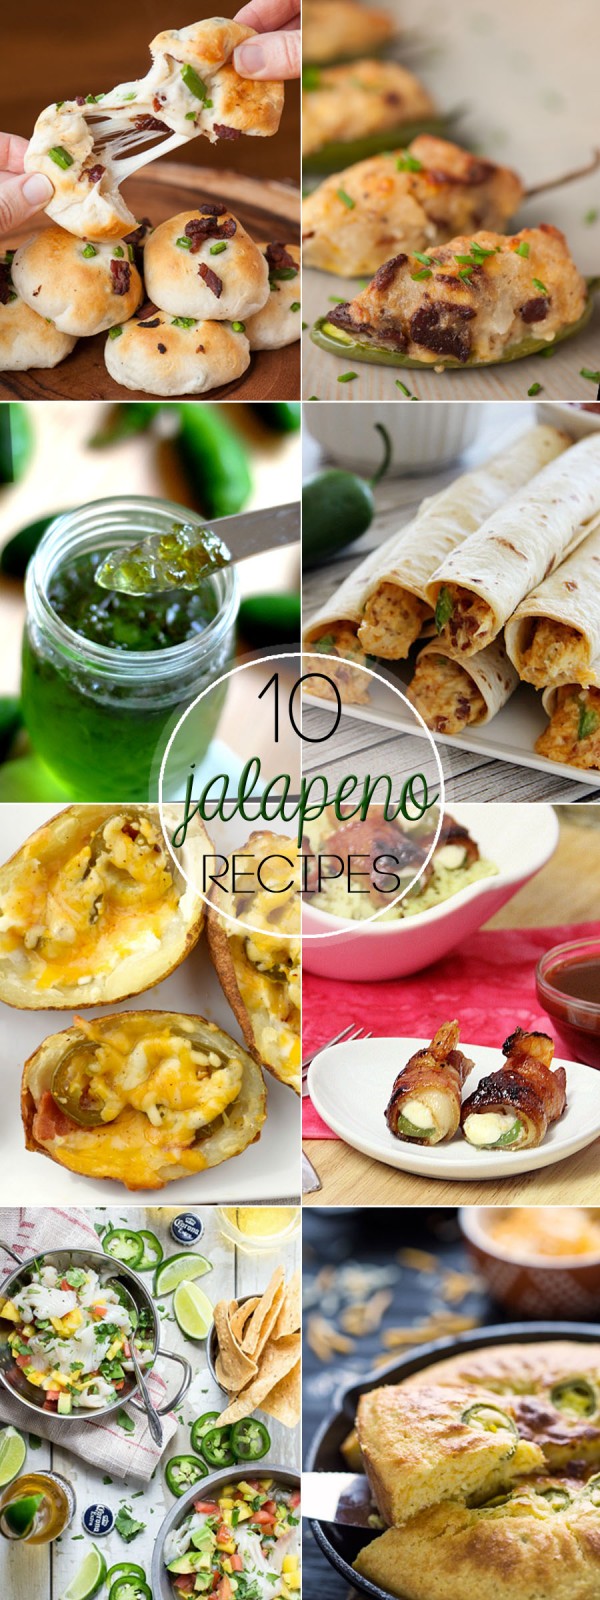 10 Jalapeno Recipes